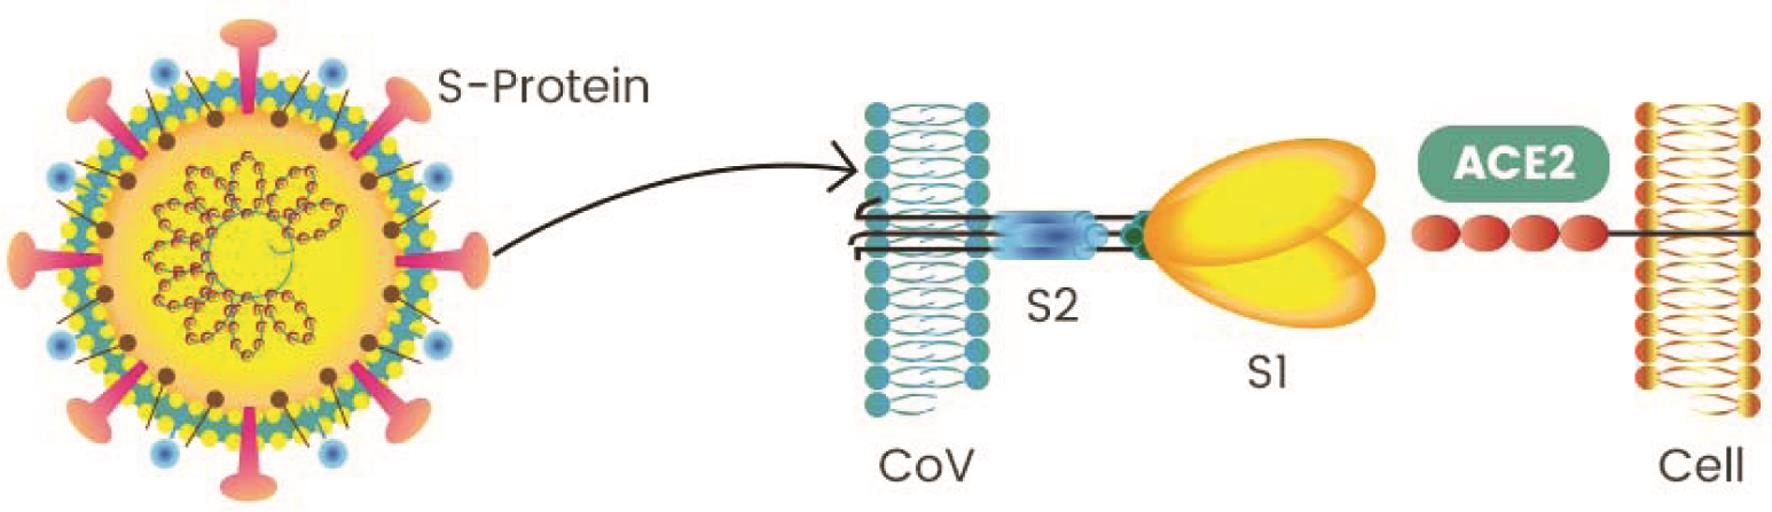  冠状病毒通过表面的刺突蛋白(Spike protein, S-protein)与宿主细胞表面受体ACE2结合进入细胞（图片来自google）。